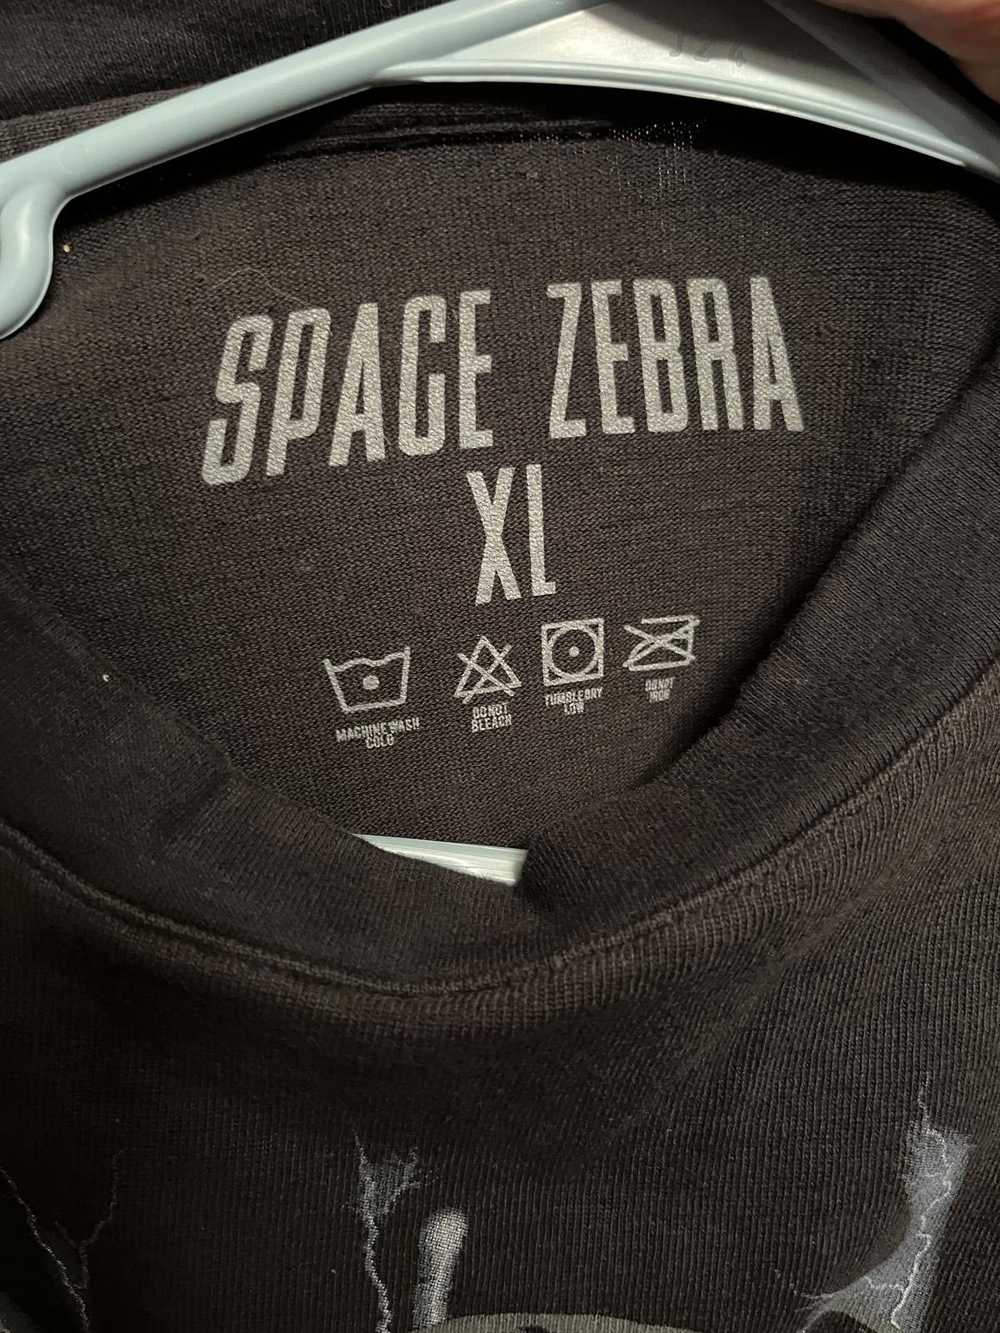 Designer Space Zebra x Aftershock Festival 2021 H… - image 1